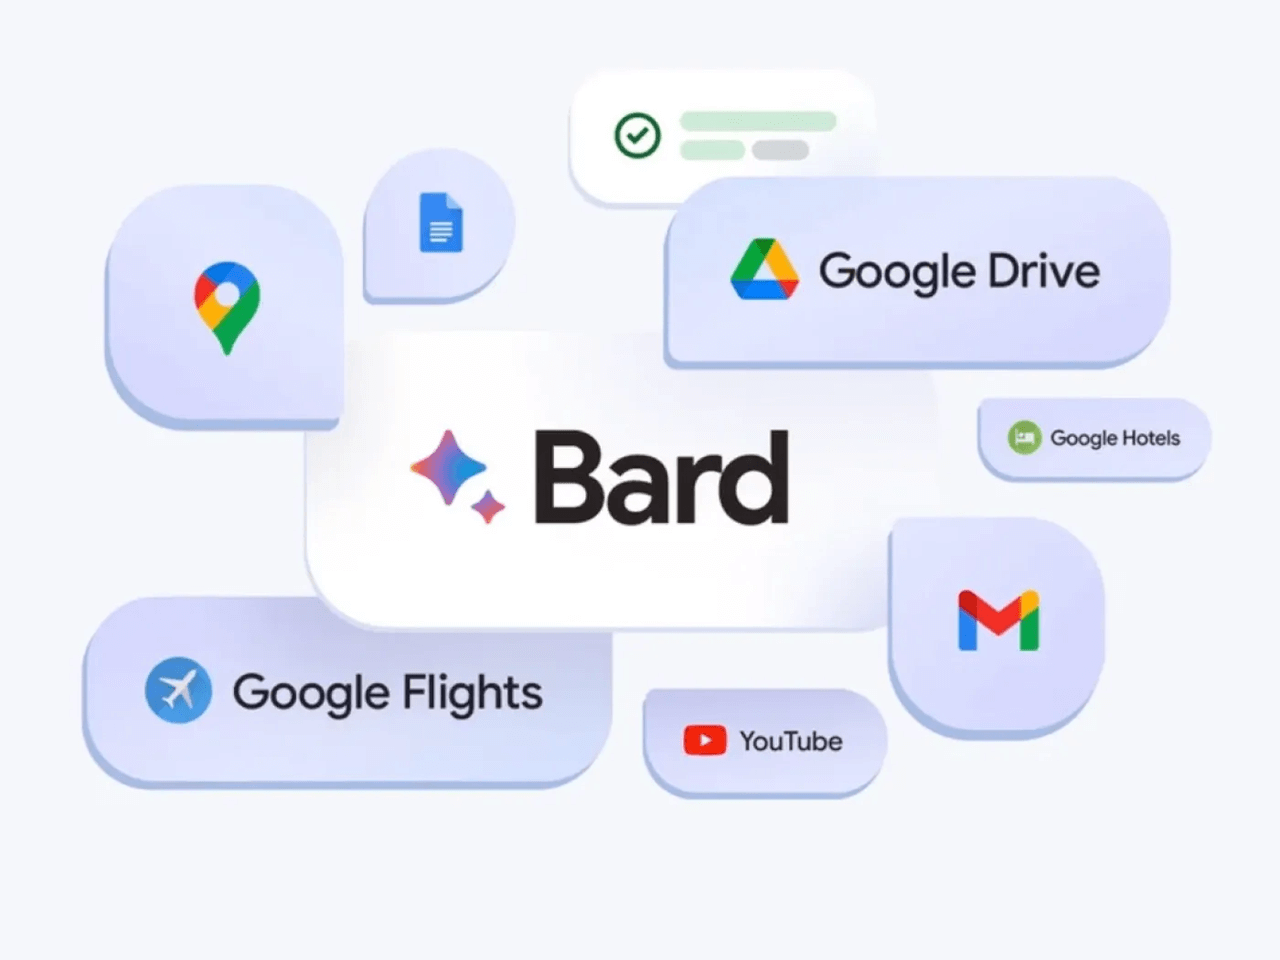 google-bard